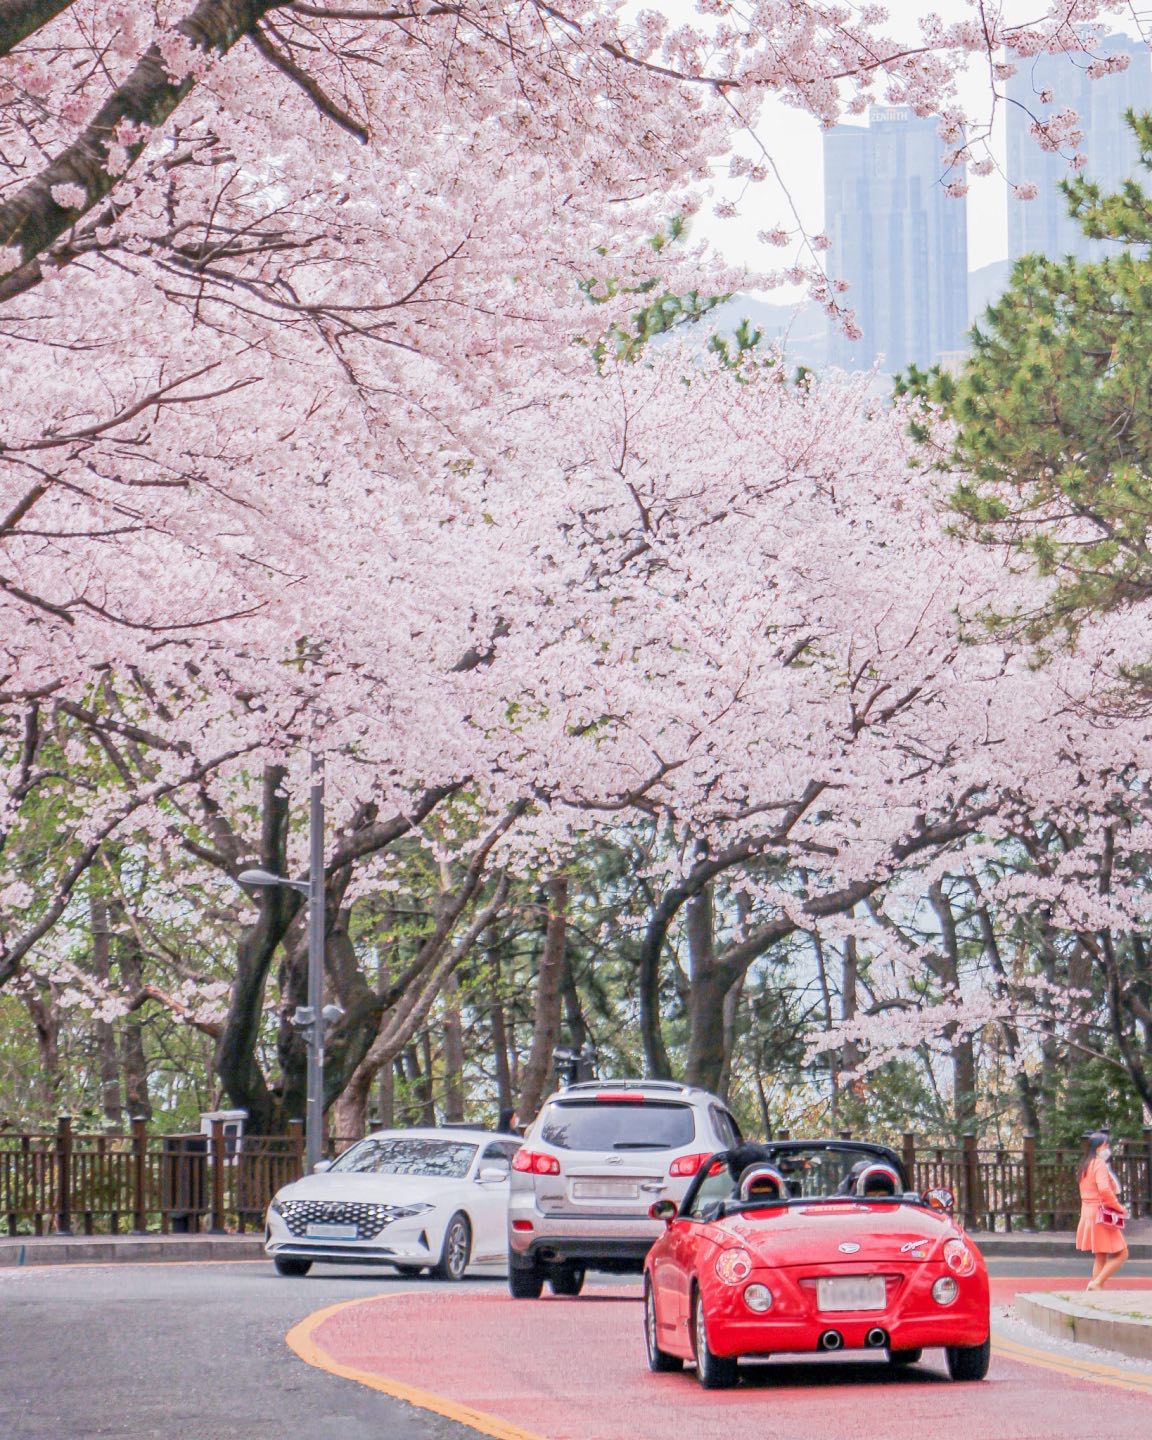 south korea cherry blossoms - haeundae dalmaji-gil